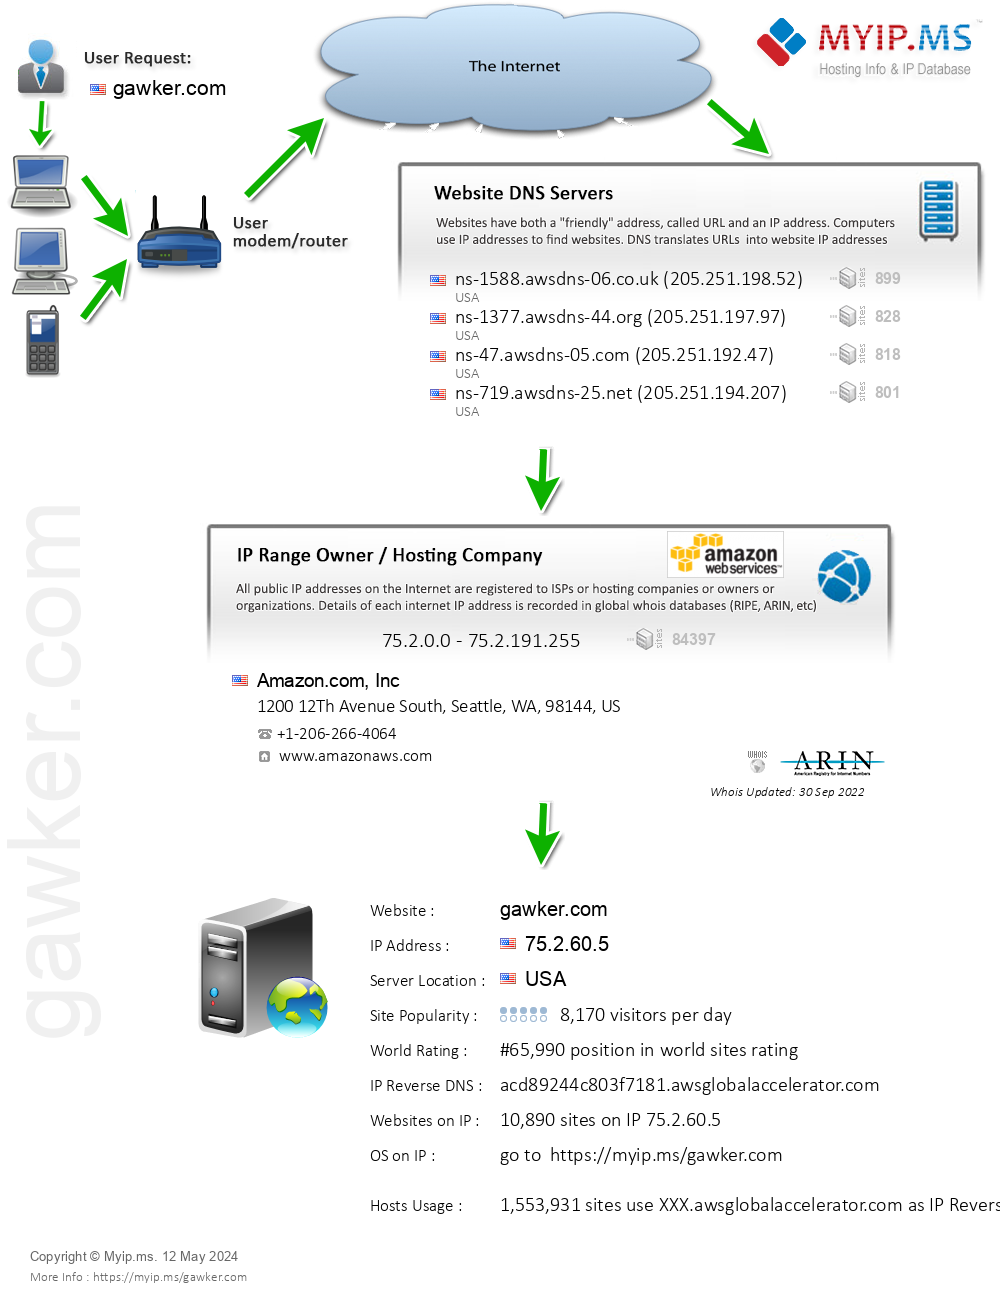 Gawker.com - Website Hosting Visual IP Diagram